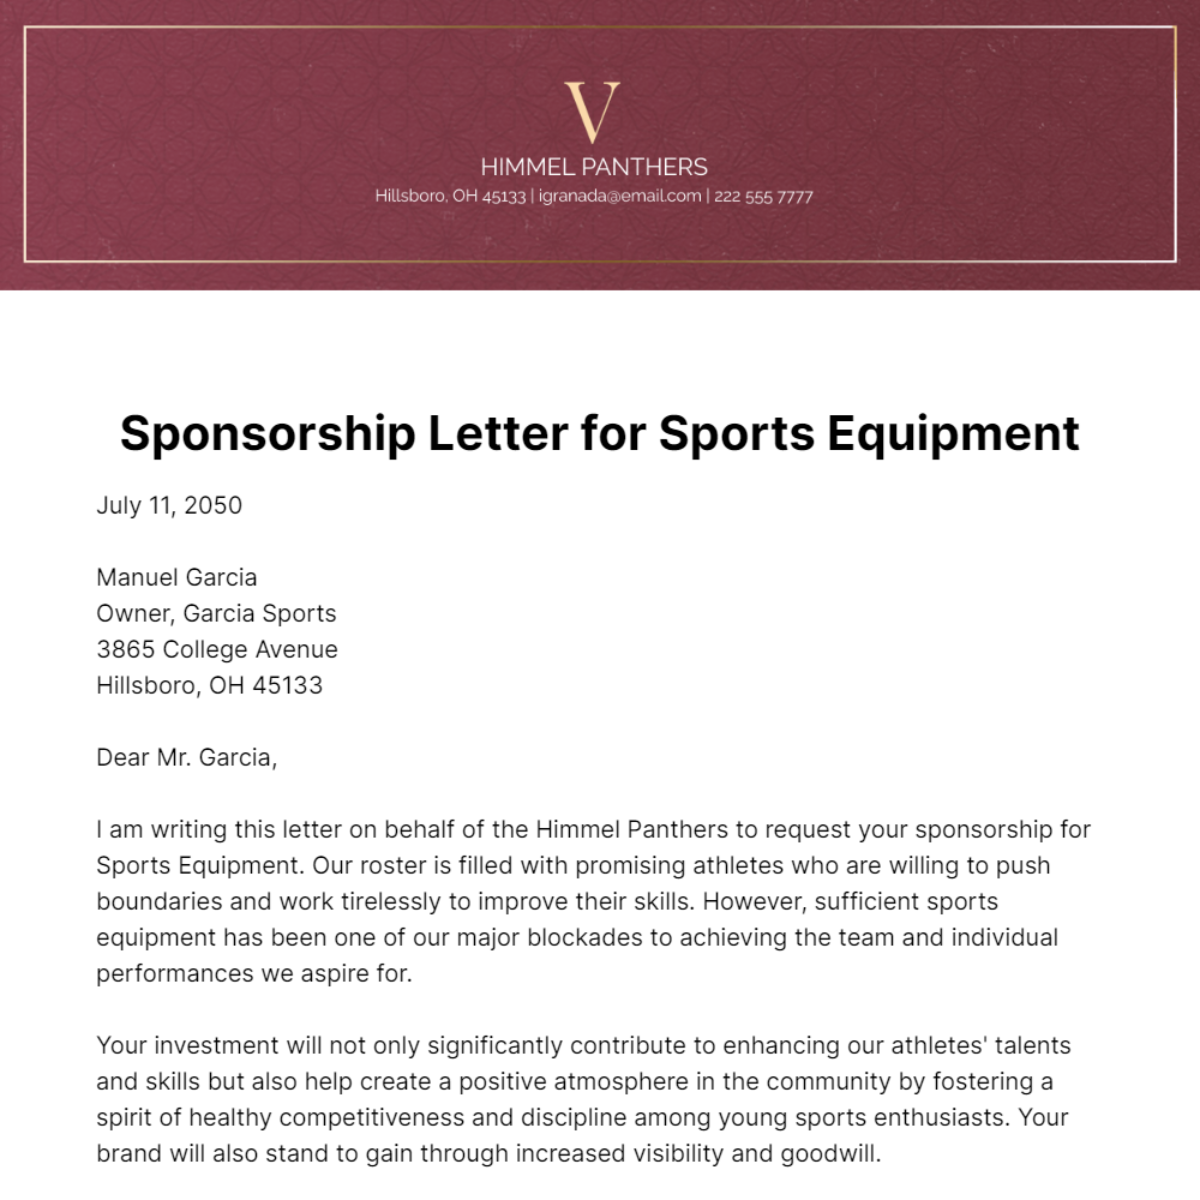 Sponsorship Letter for Sports Equipment   Template